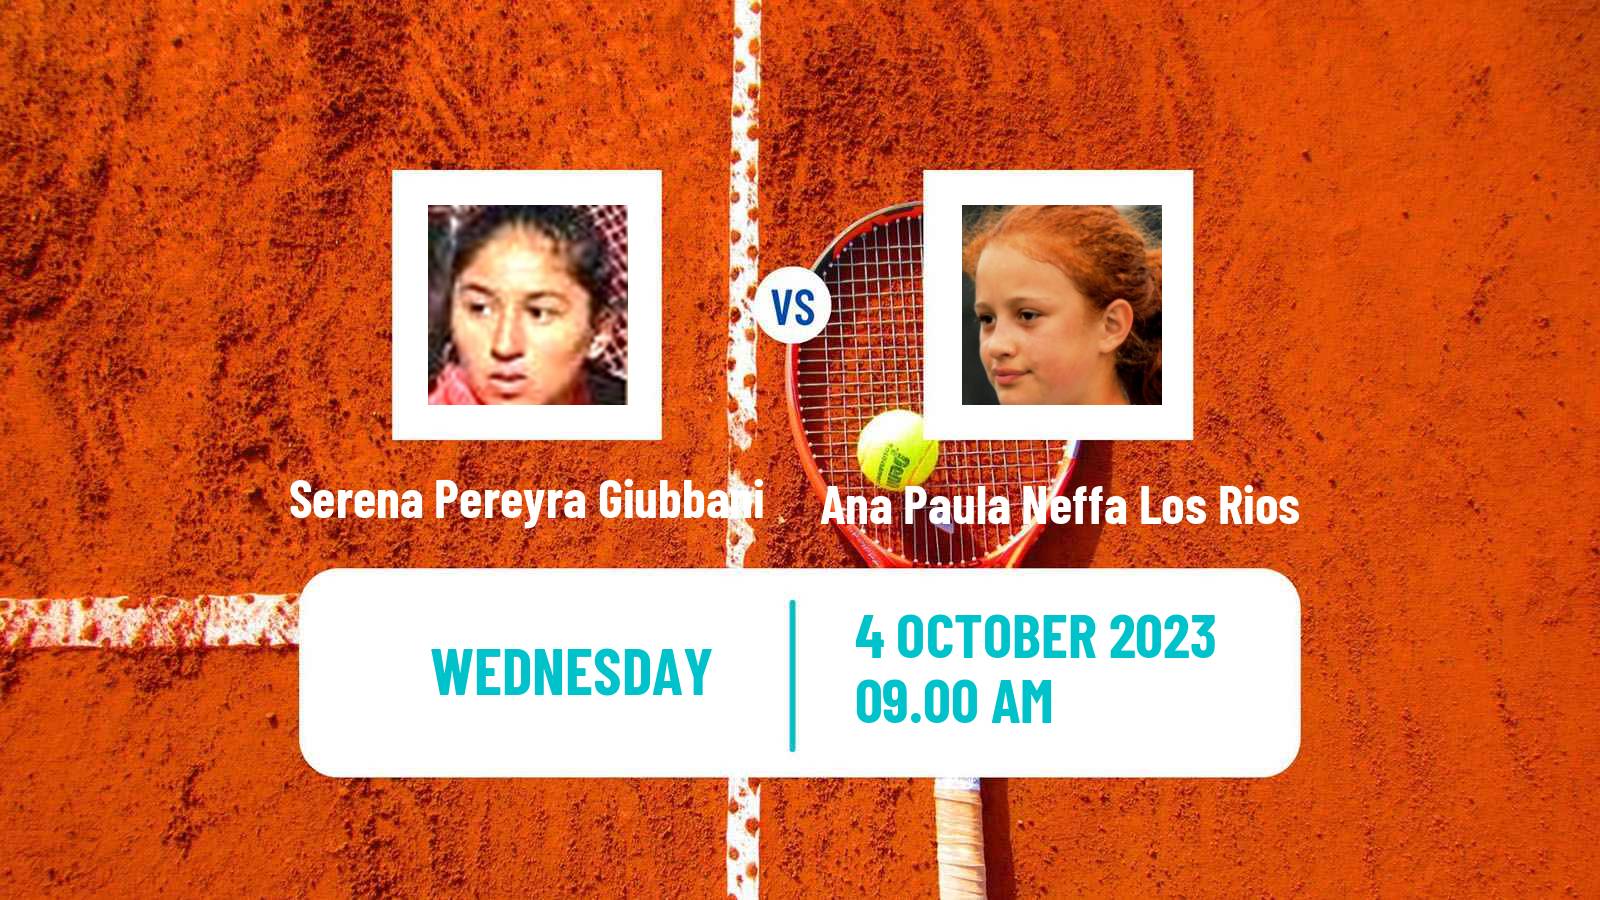 Tennis ITF W25 Mendoza Women Serena Pereyra Giubbani - Ana Paula Neffa Los Rios